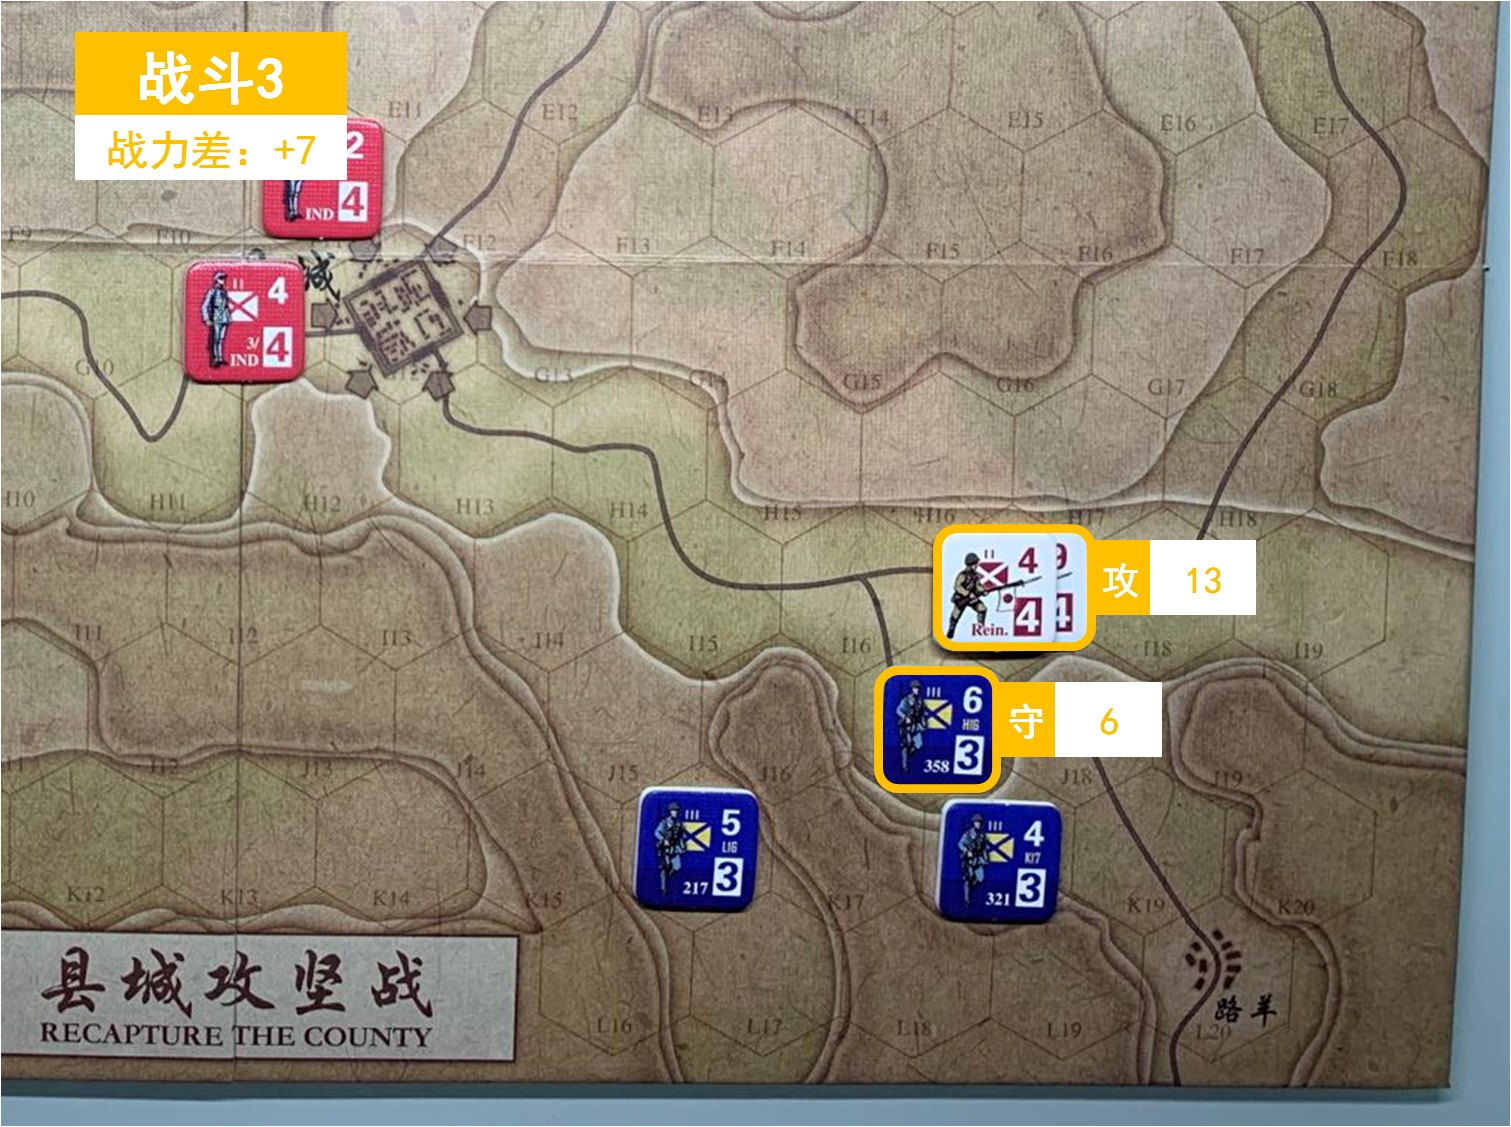 第二回合 日方战斗阶段 战斗3 战斗力差值